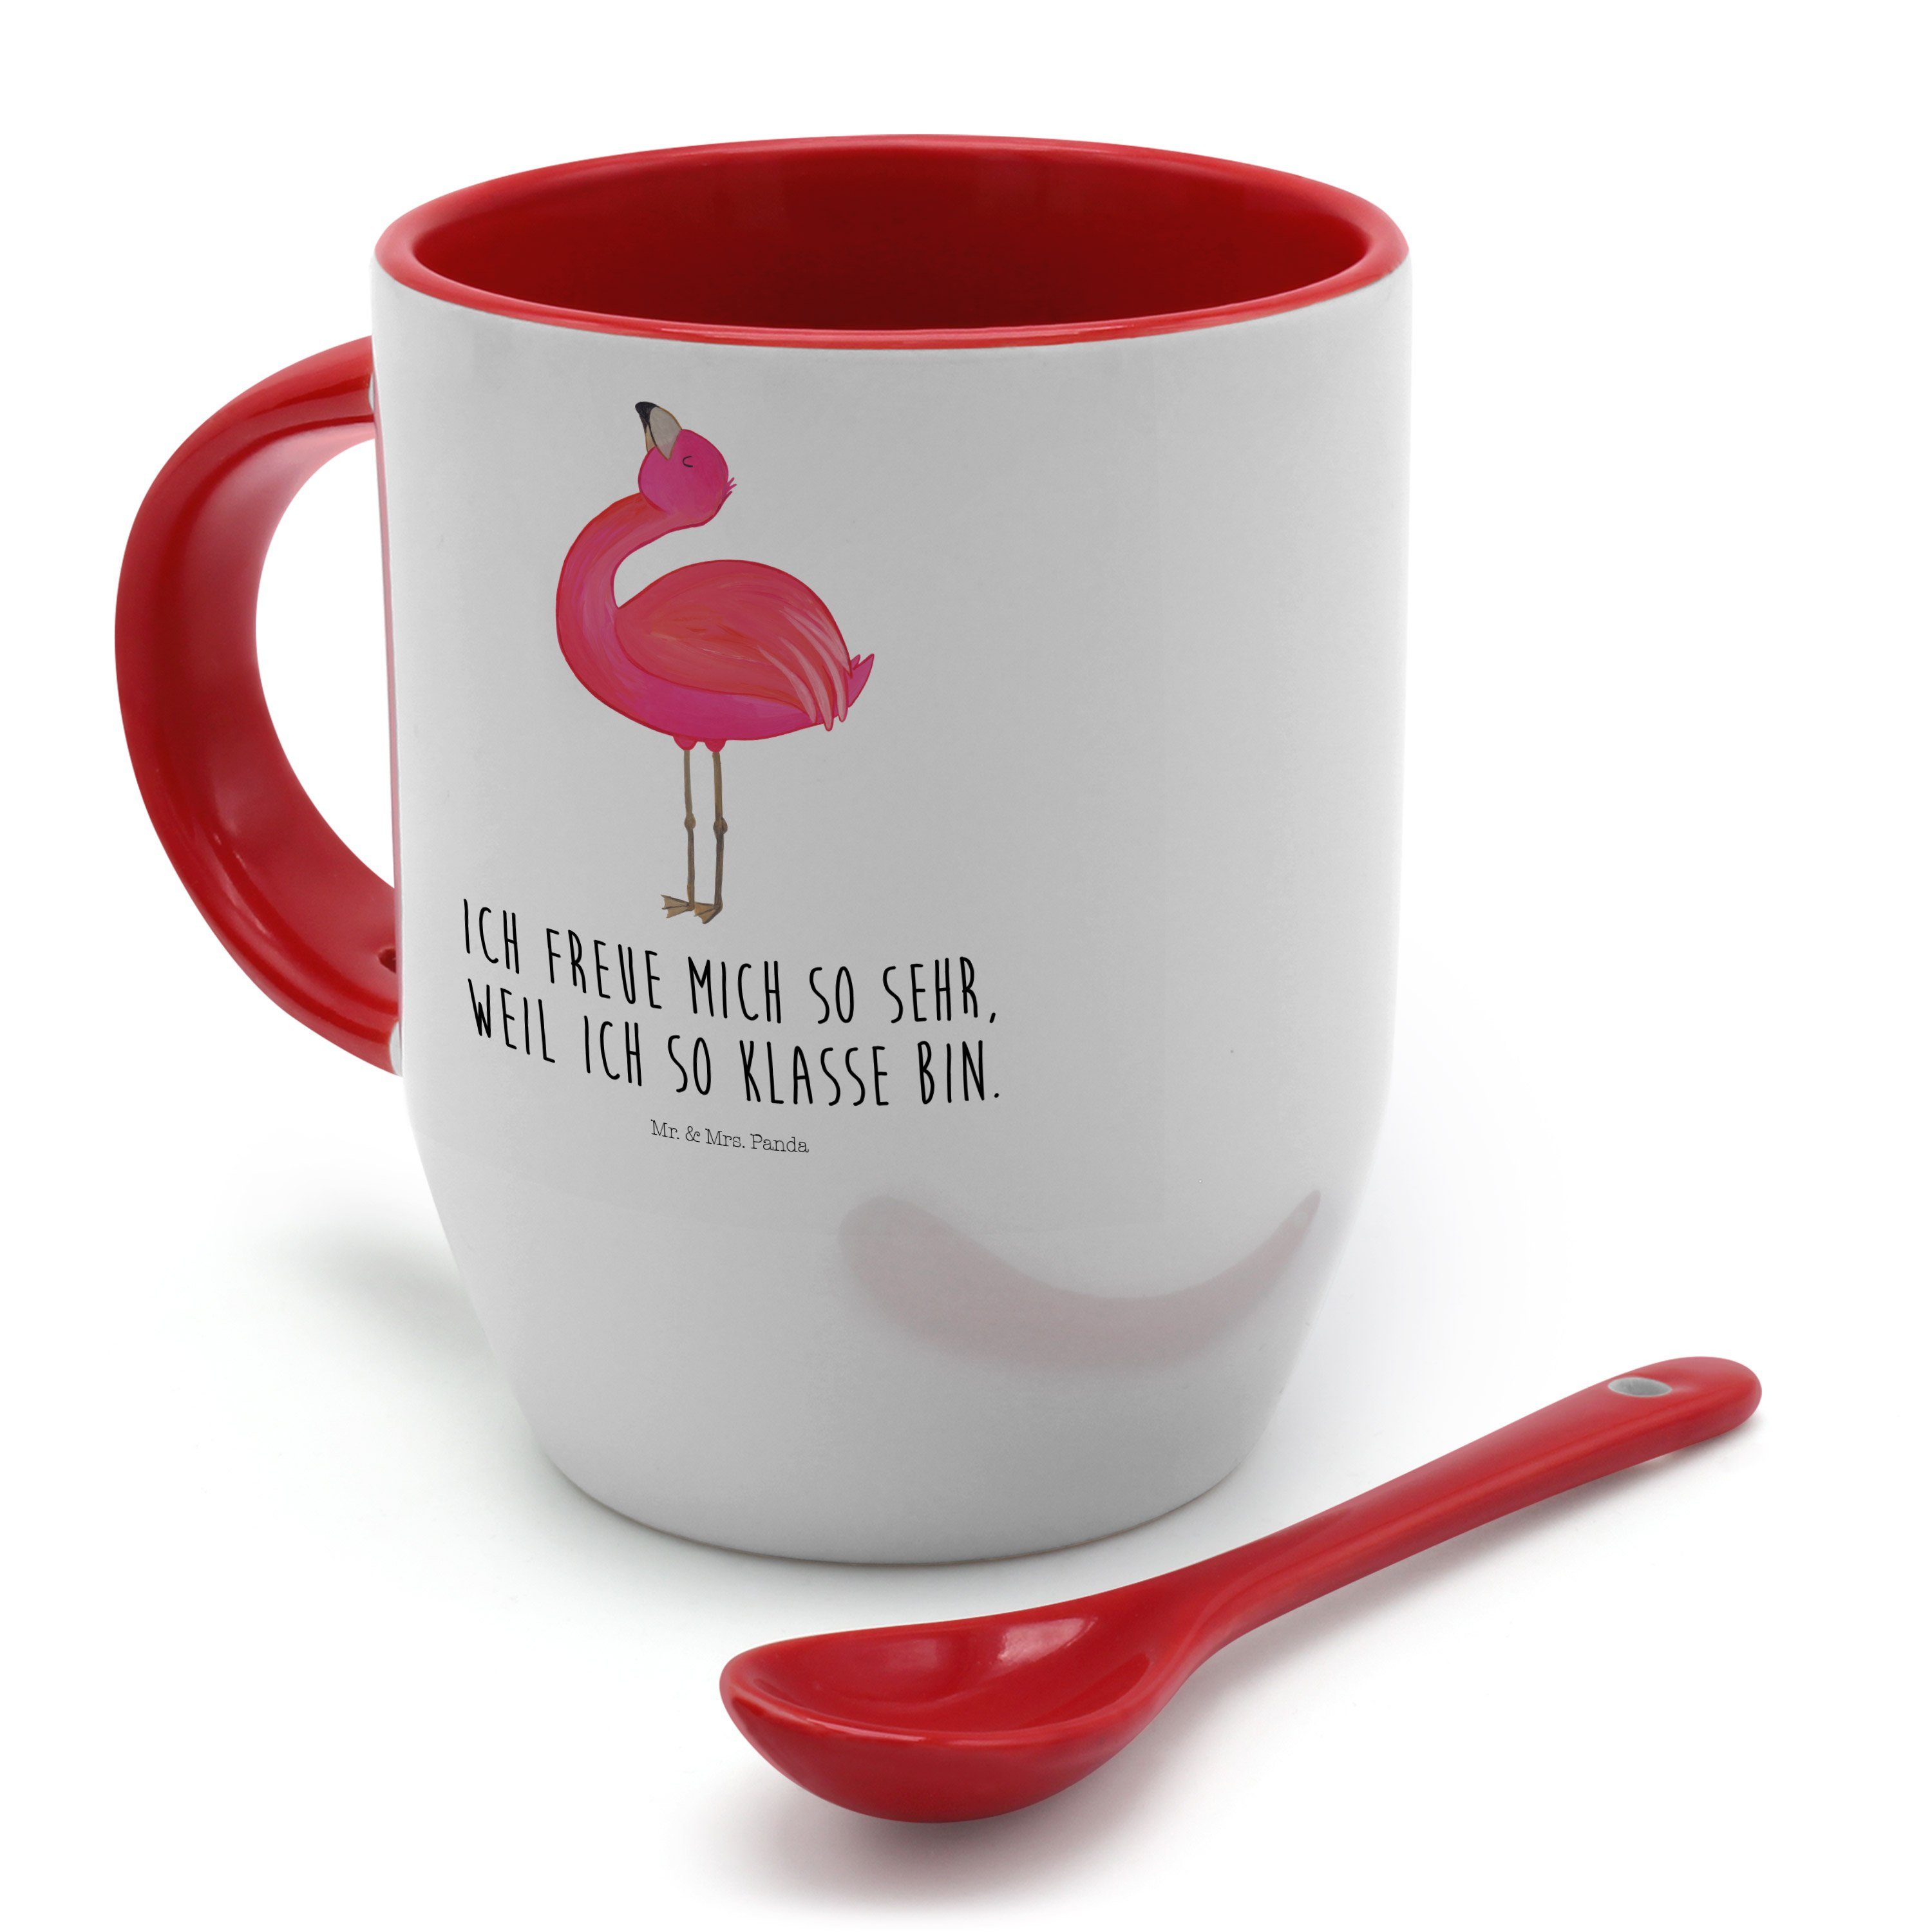 Mr. & Mrs. Panda Tasse mit - Geschenk, Tasse stolz Spruch, Tasse, - Keramik Weiß Schwester, Flamingo